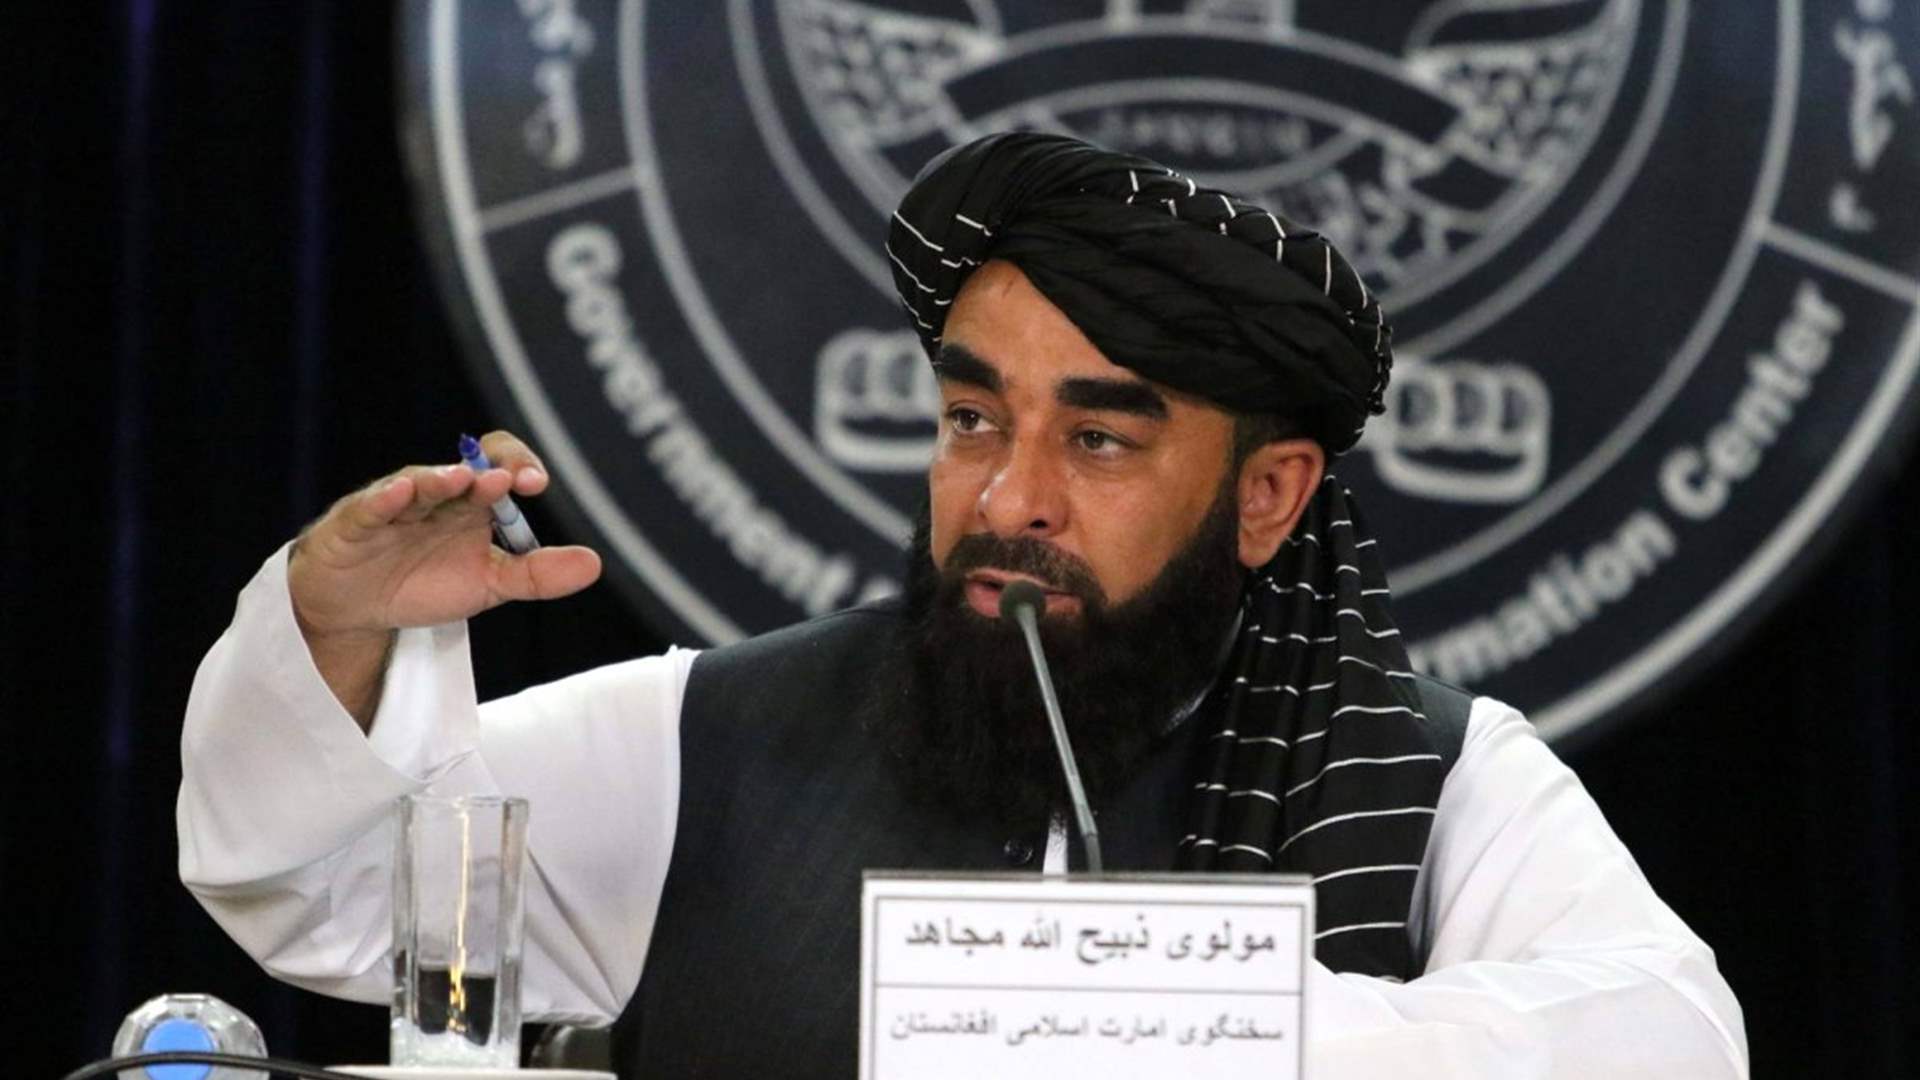 سلطات طالبان تقطع الروابط مع السفارات الموالية للنظام السابق في الغرب